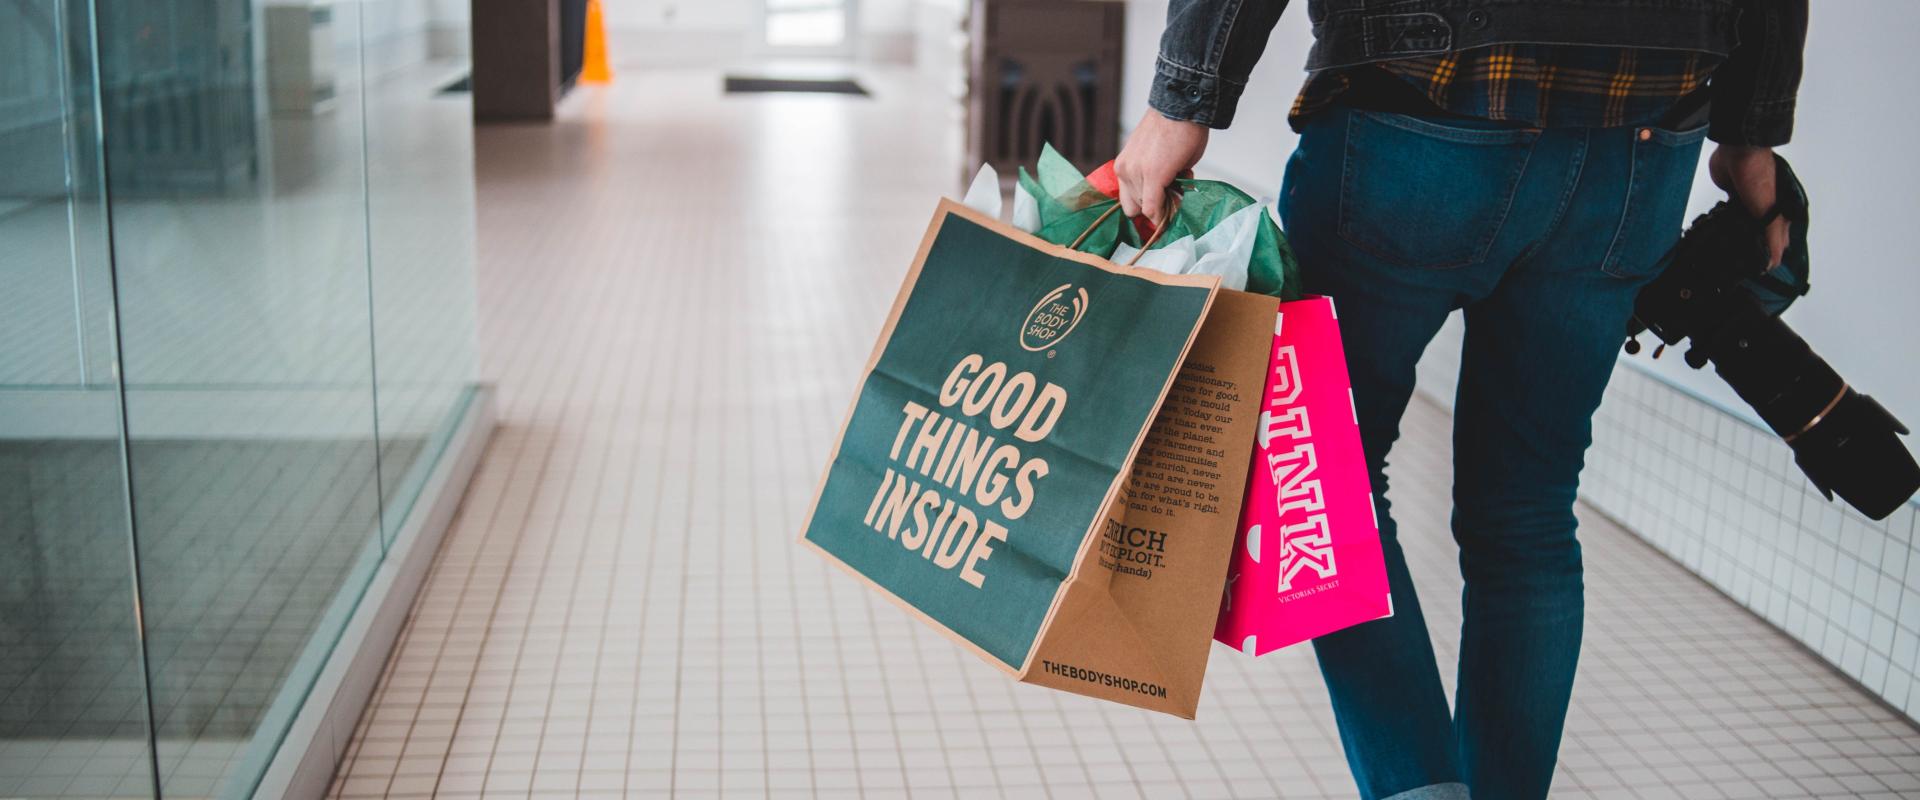 Jedna trzecia konsumentów decyduje się na zakup produktu, który spodoba im się w sklepie